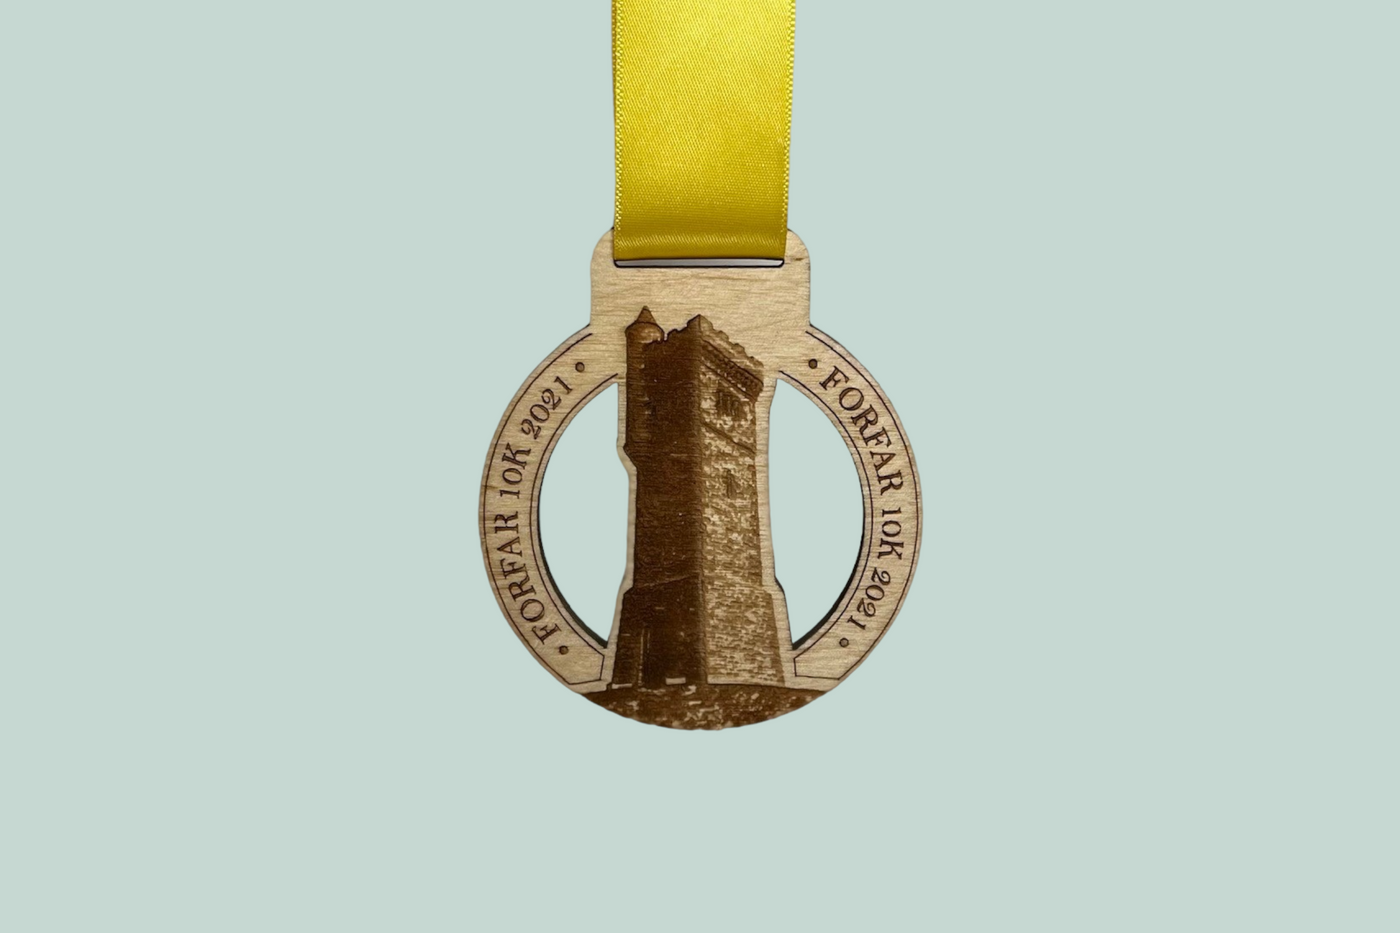 Bespoke Wooden Medal